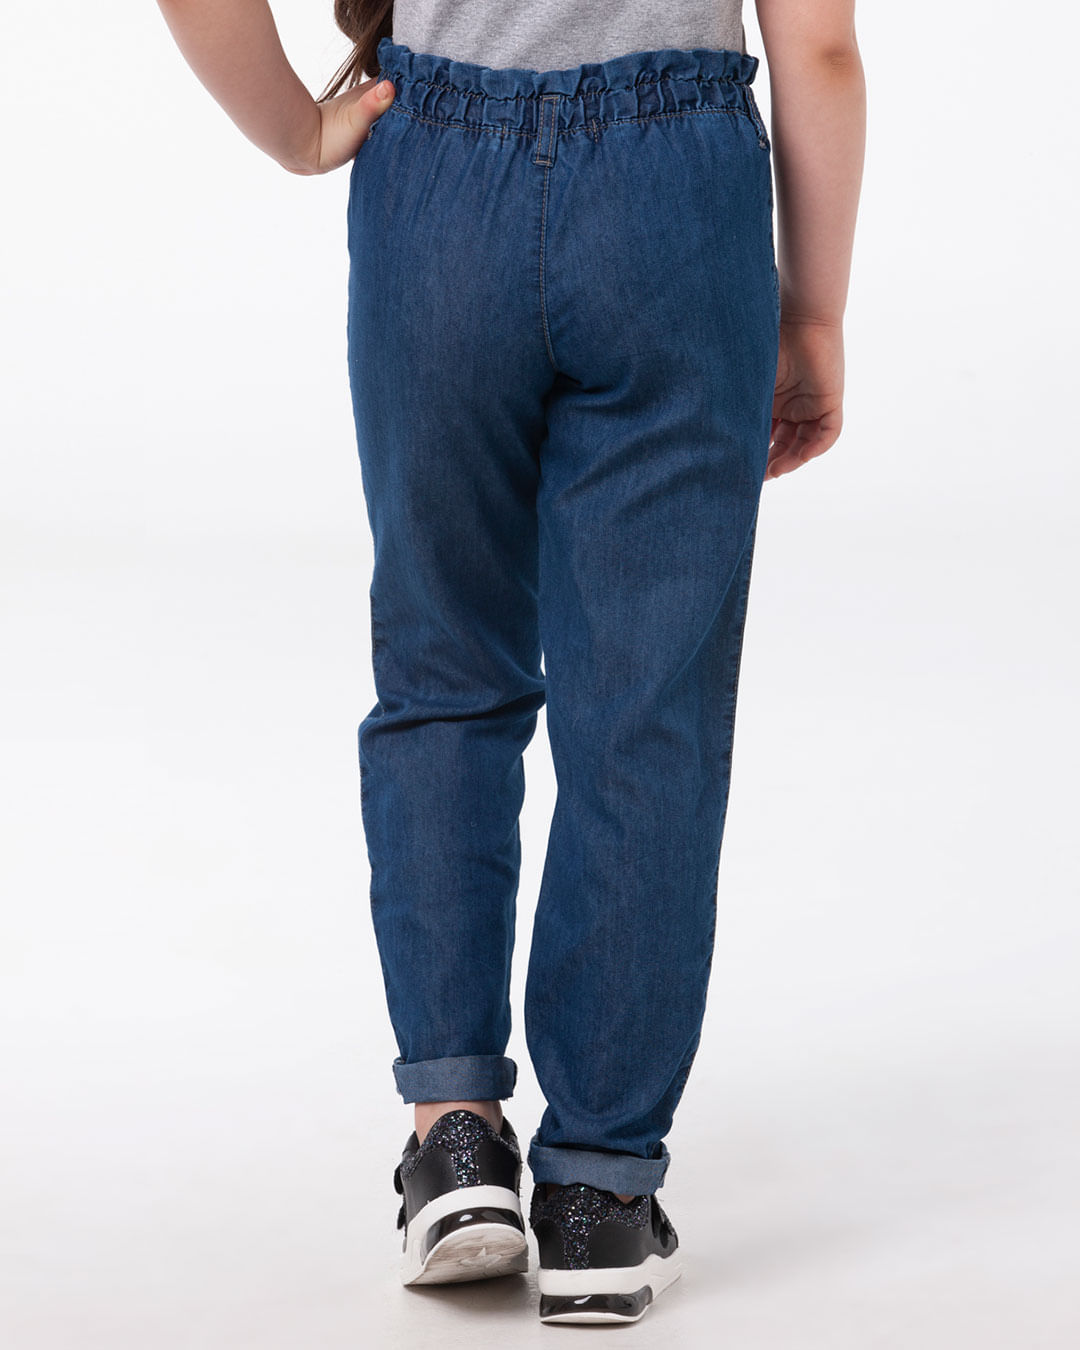 Calca-Jeans-Infantil-Elastico-Franzido-Azul